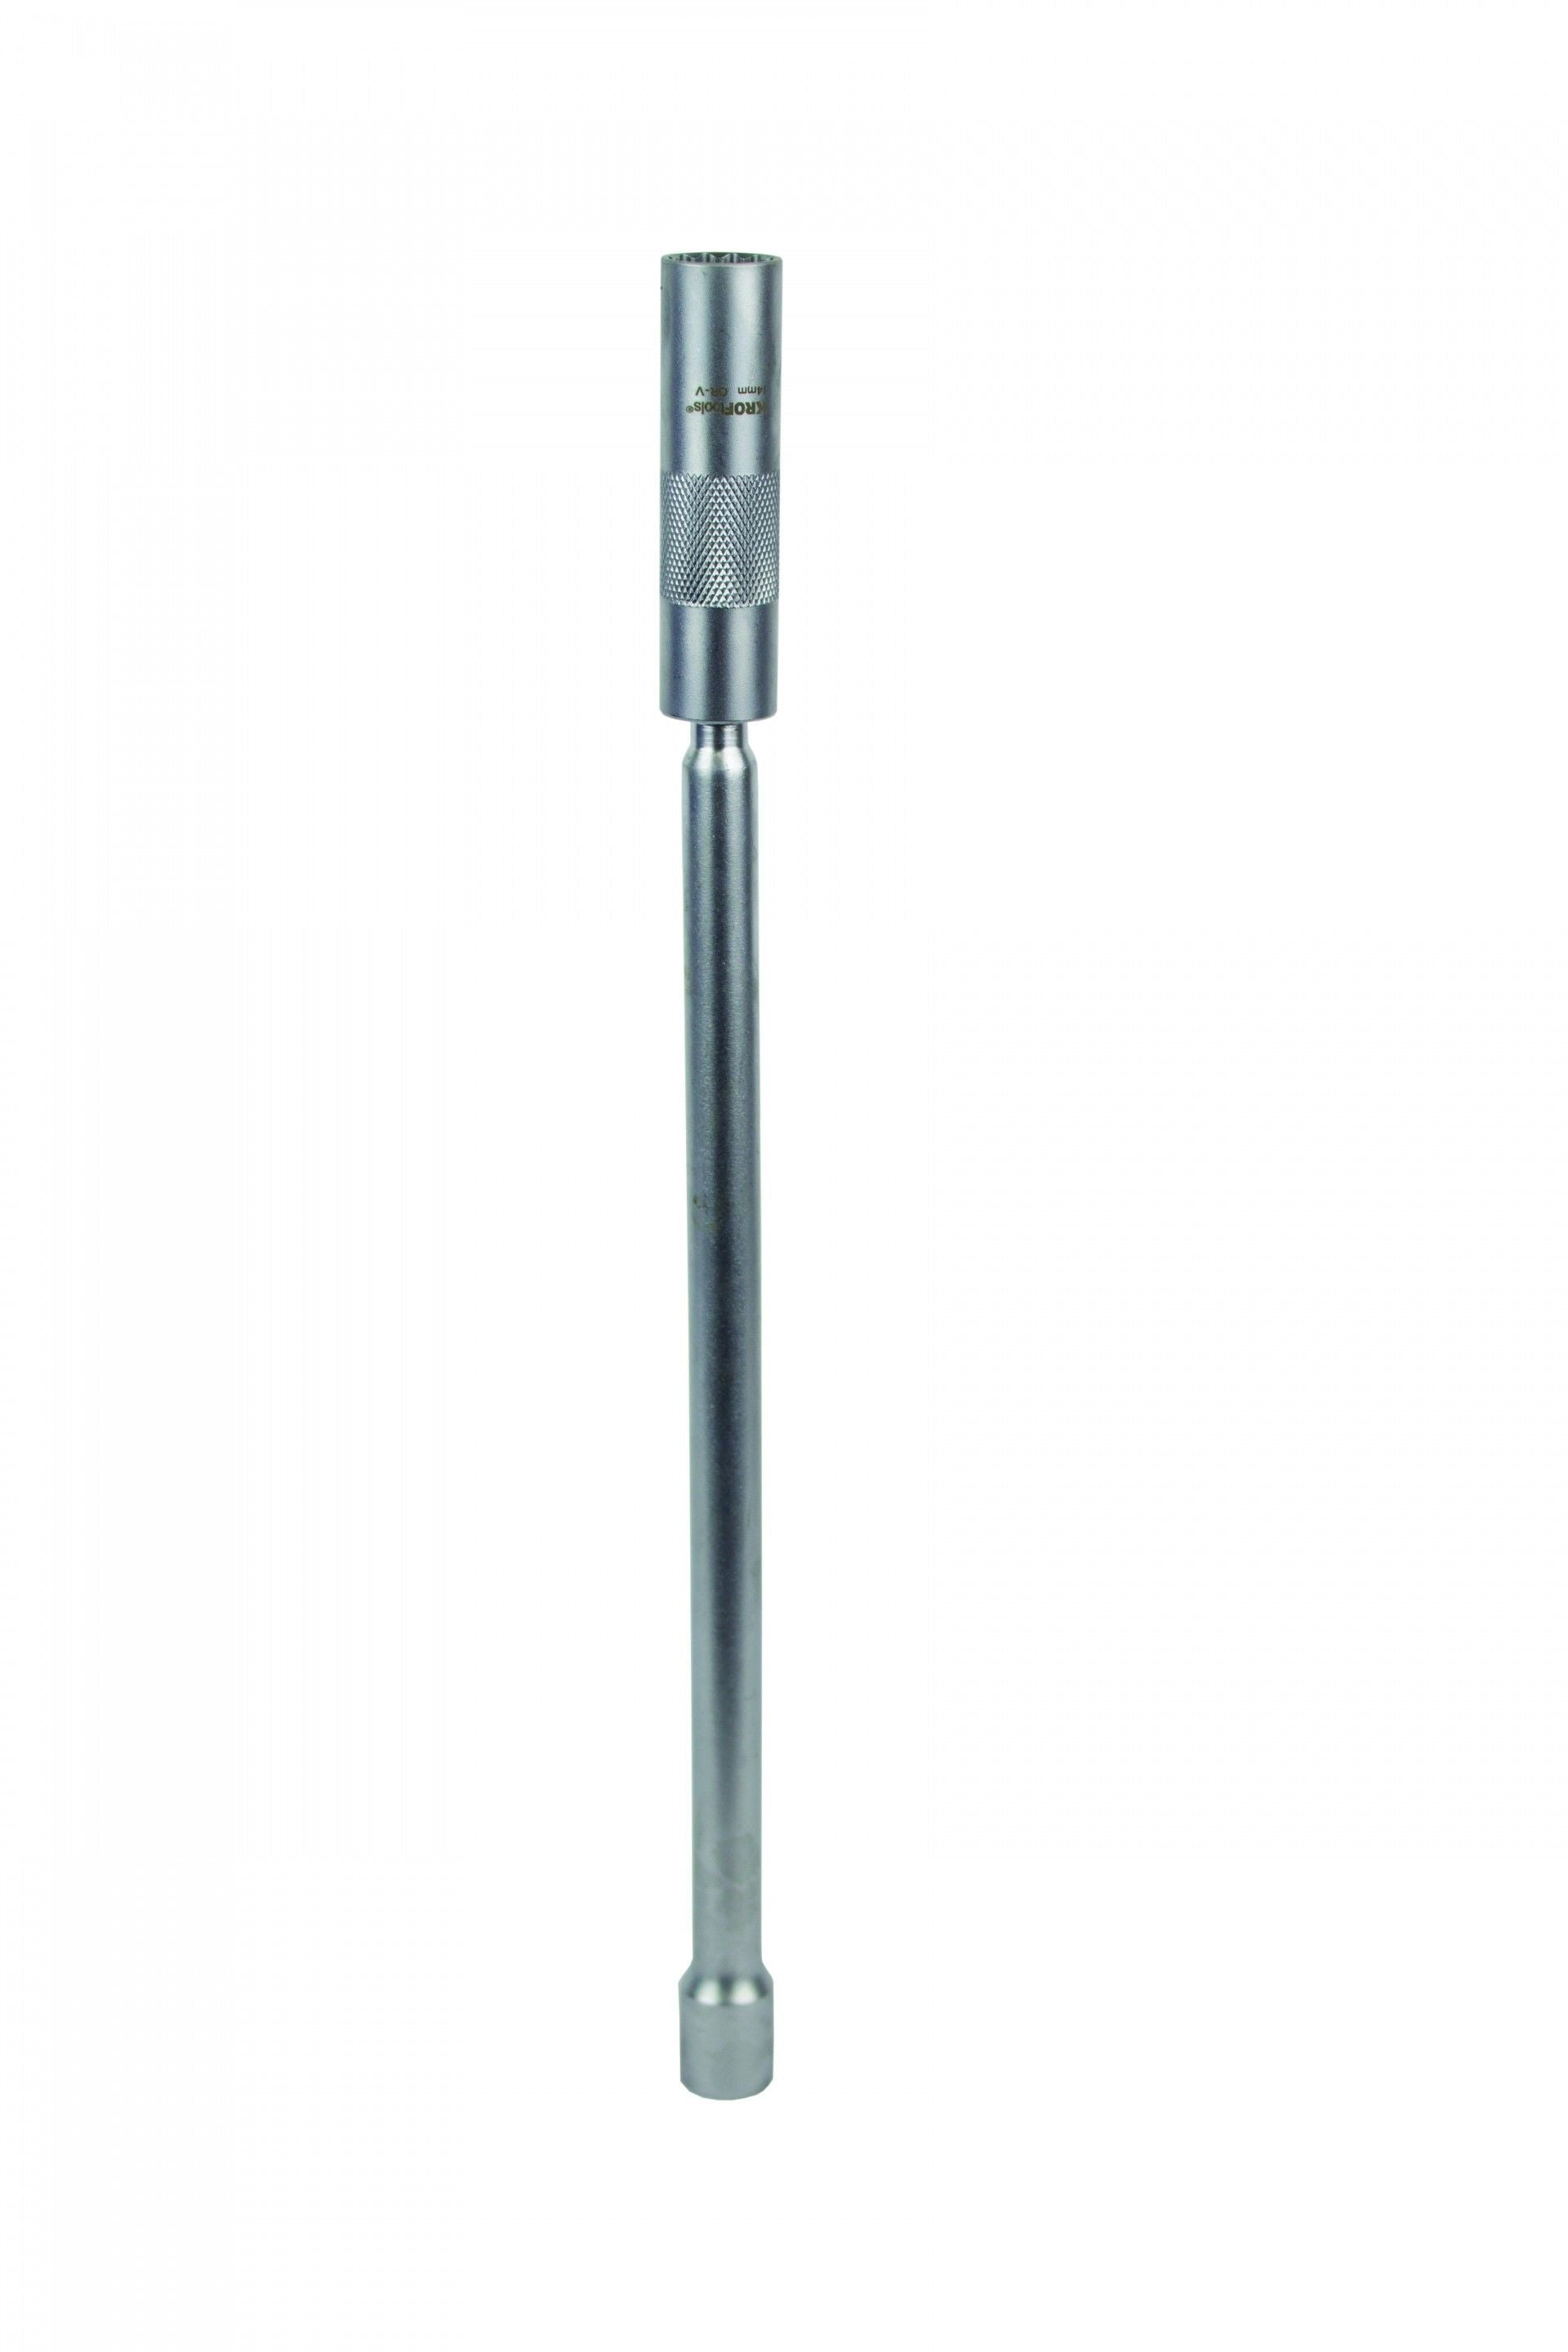 Ключ за свещи 14 мм с удължение 3/8 екстра дълъг 310 мм KROFTOOLS